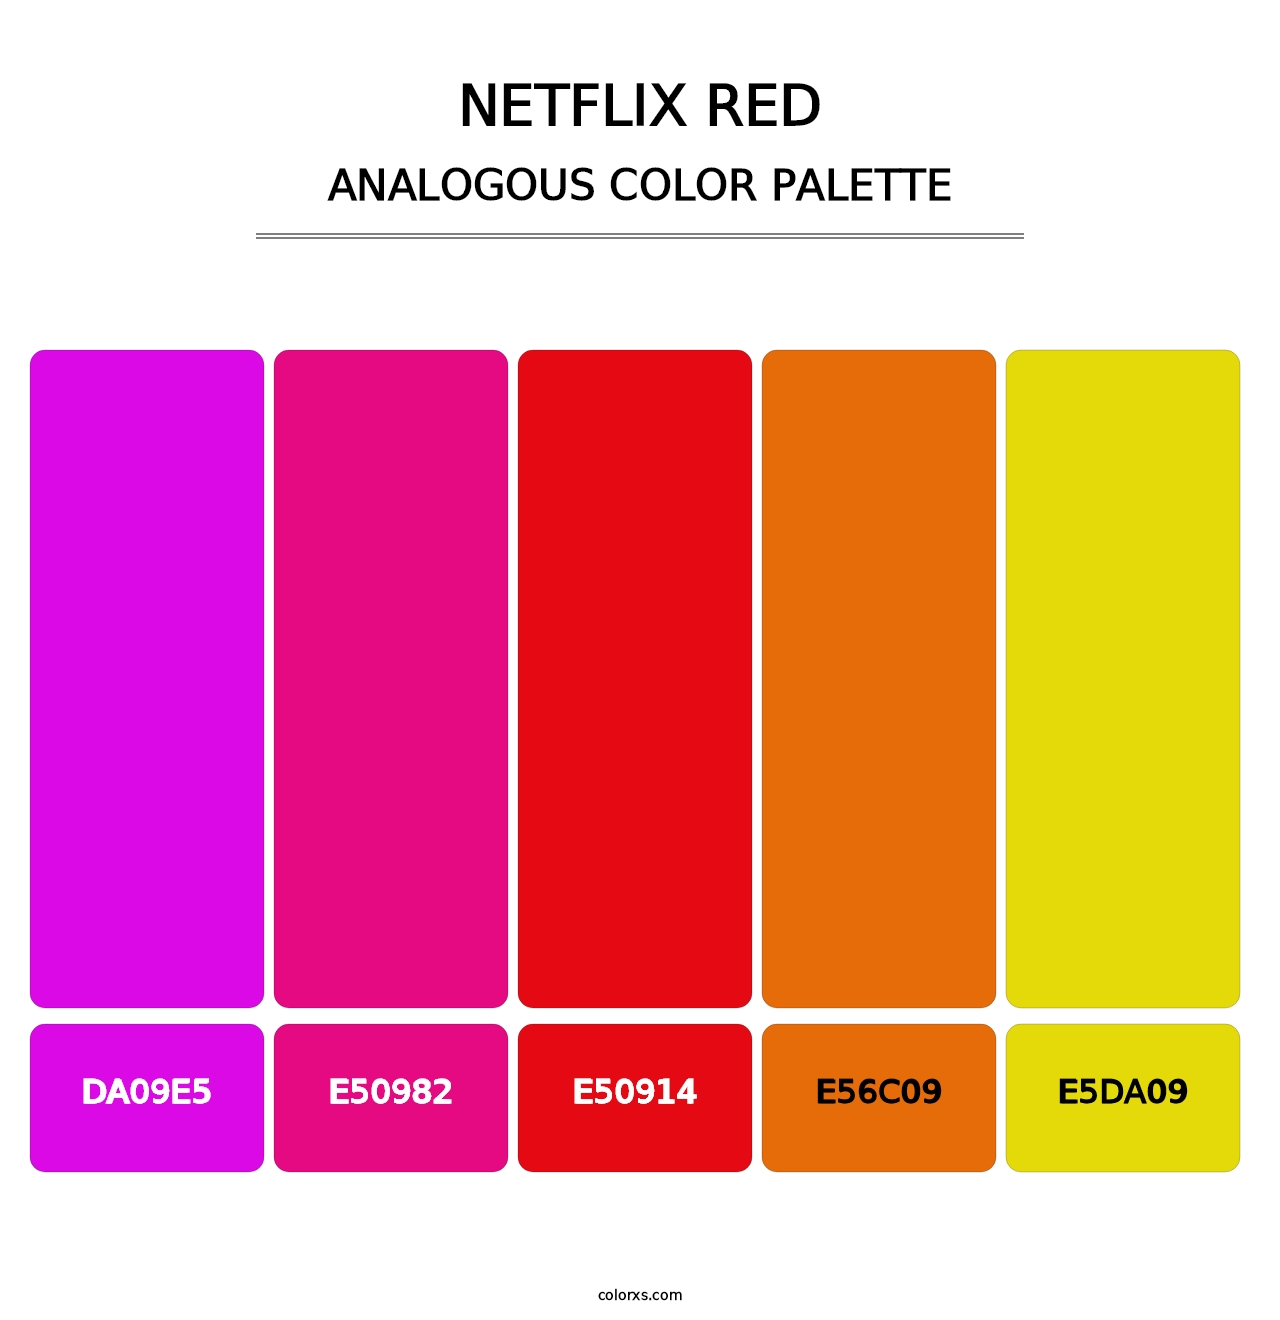 Netflix Red - Analogous Color Palette